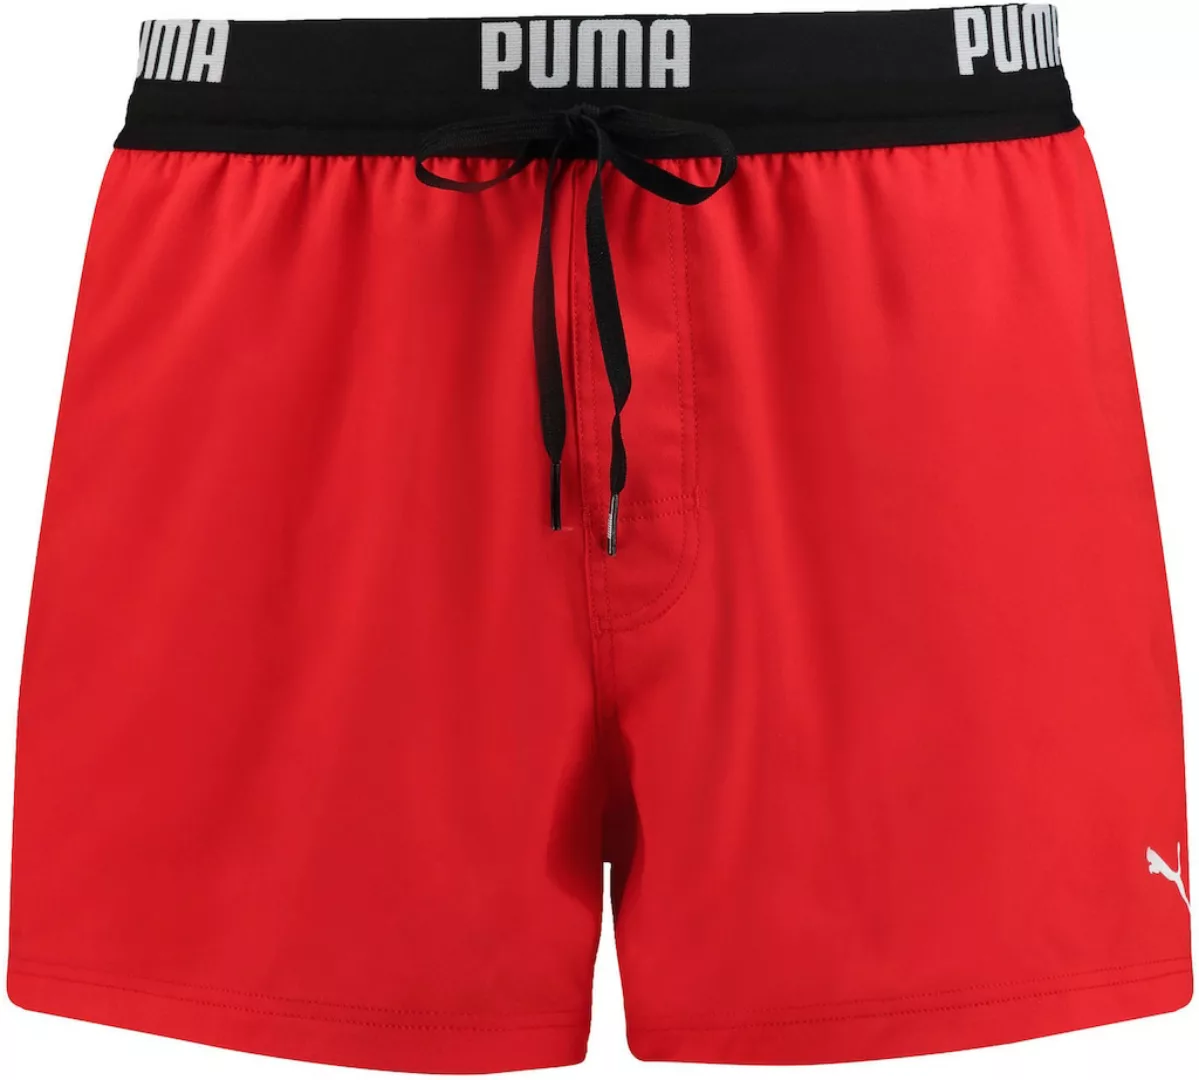 Puma Logo Schwimmboxer 2XL Red günstig online kaufen